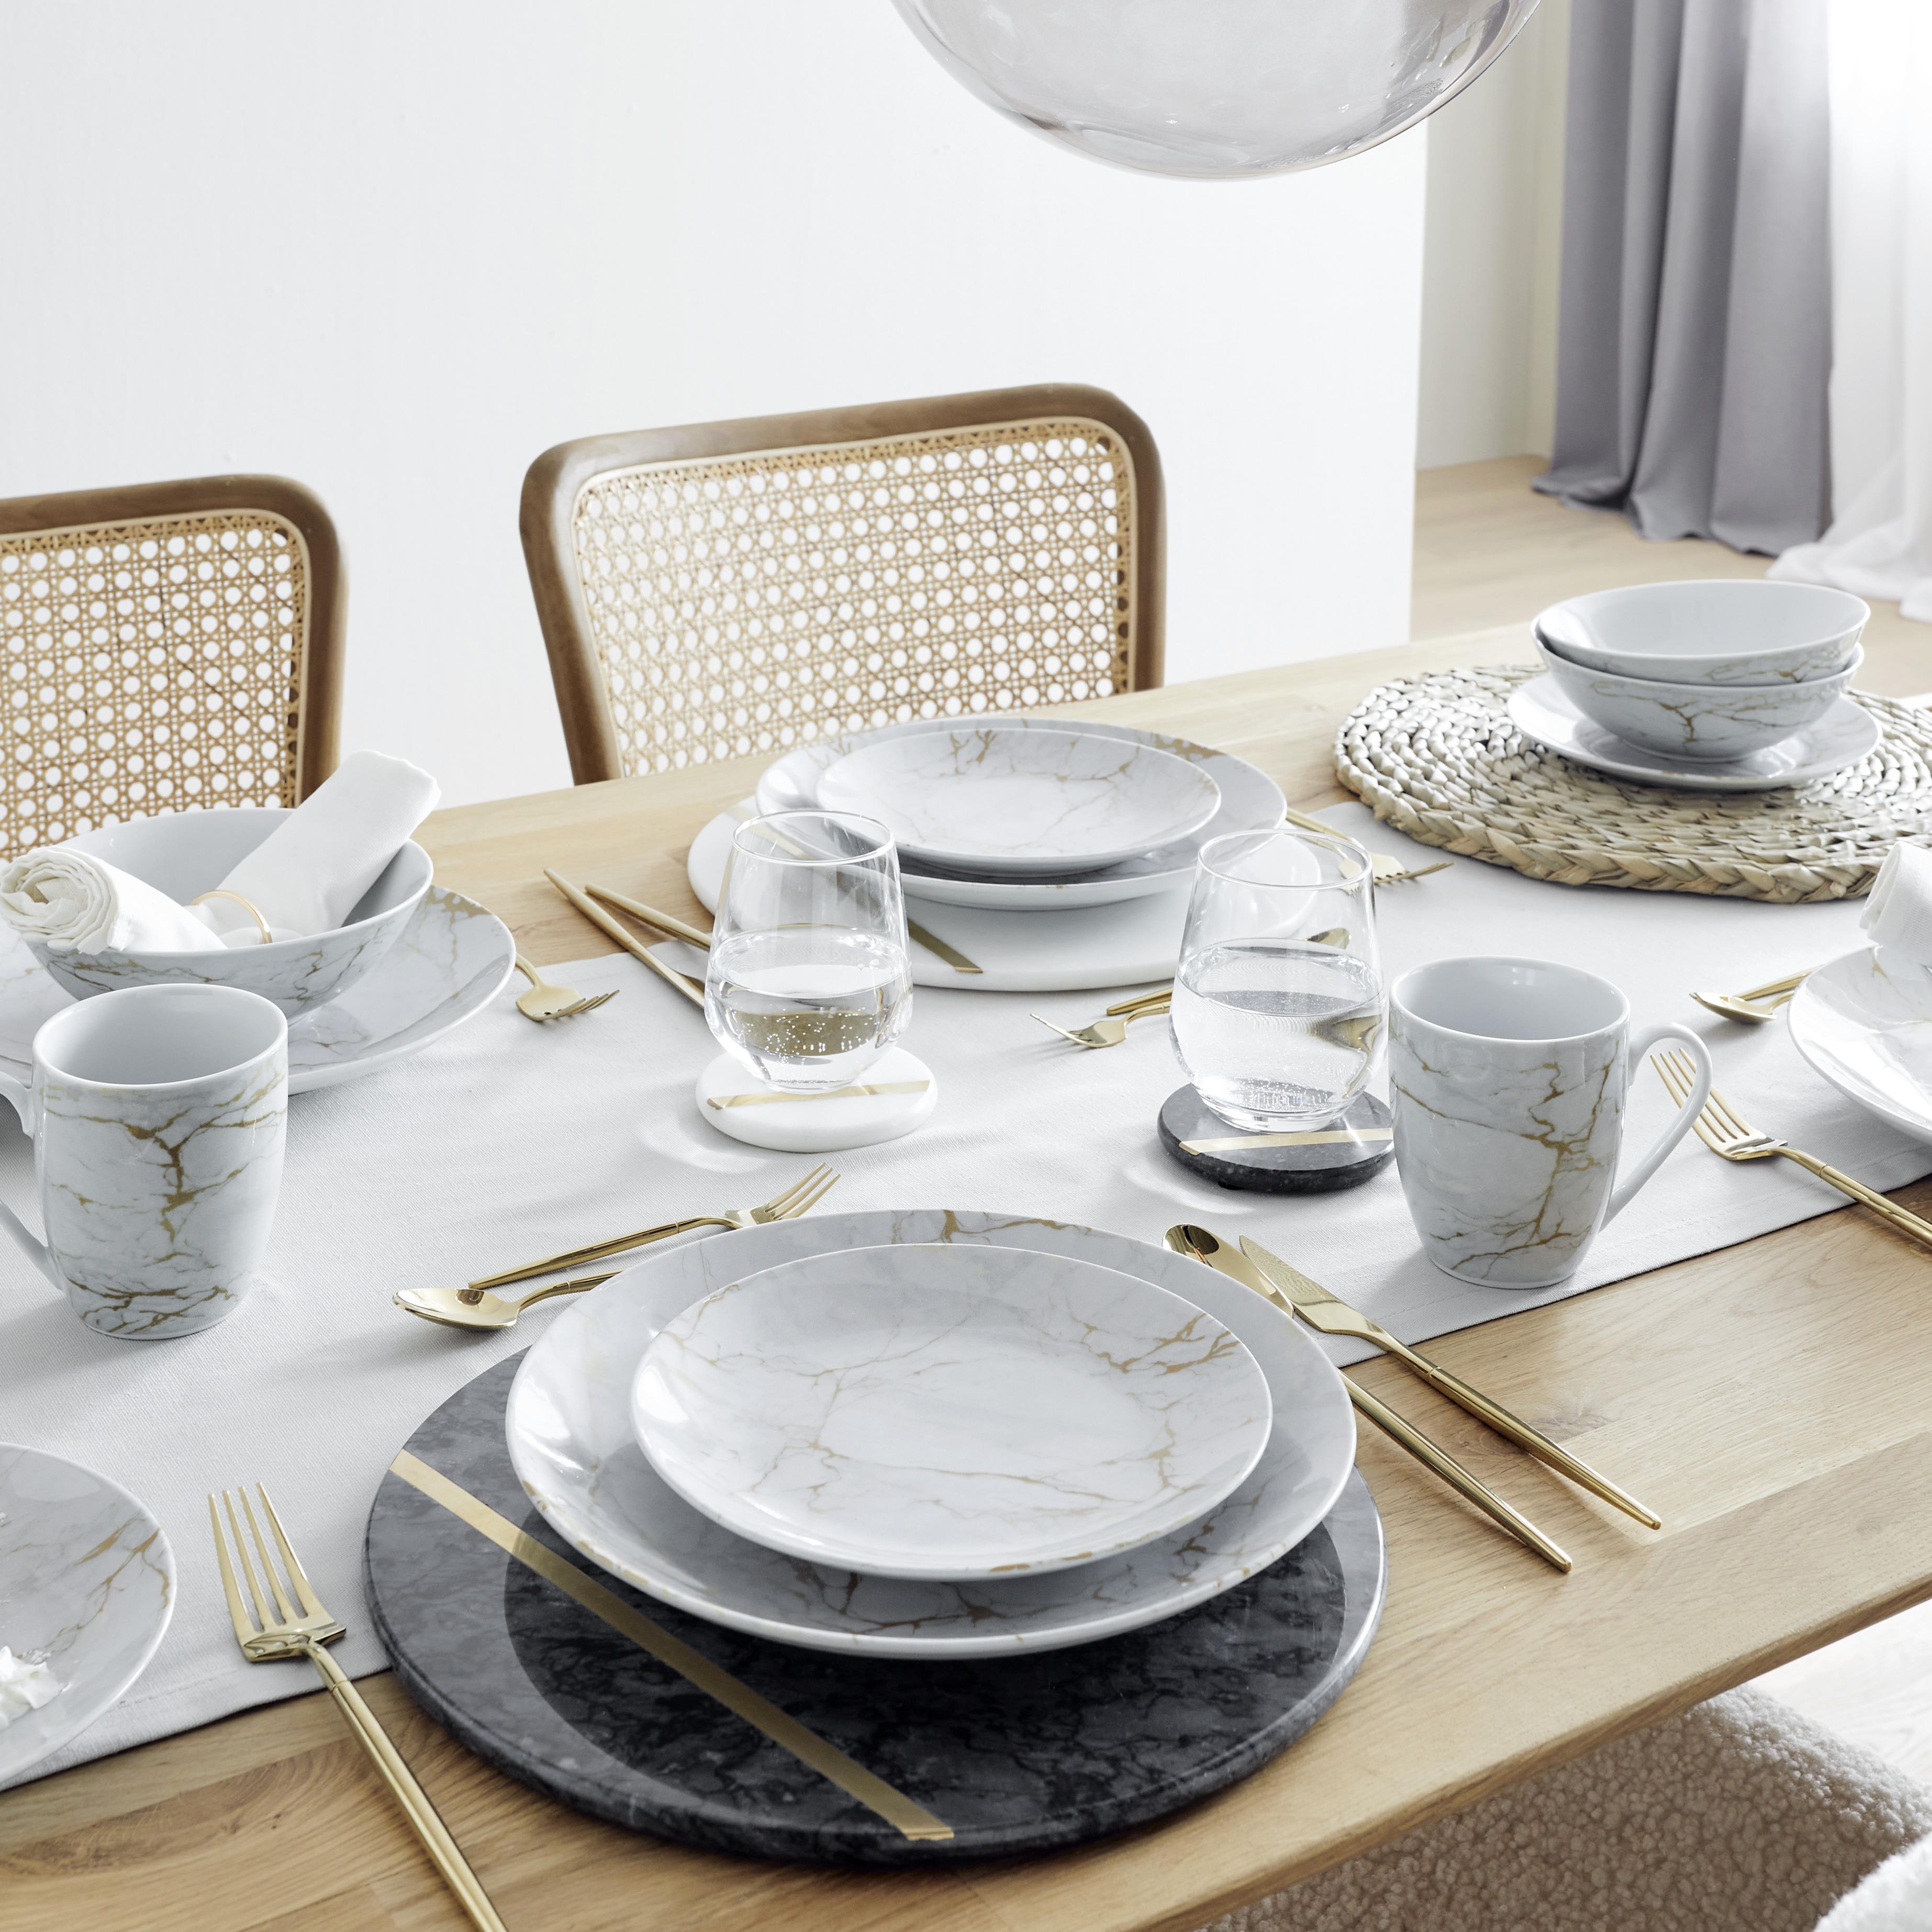 Kombinovaná Souprava Glam, 16dílný - šedá/barvy zlata, Moderní, keramika - Premium Living